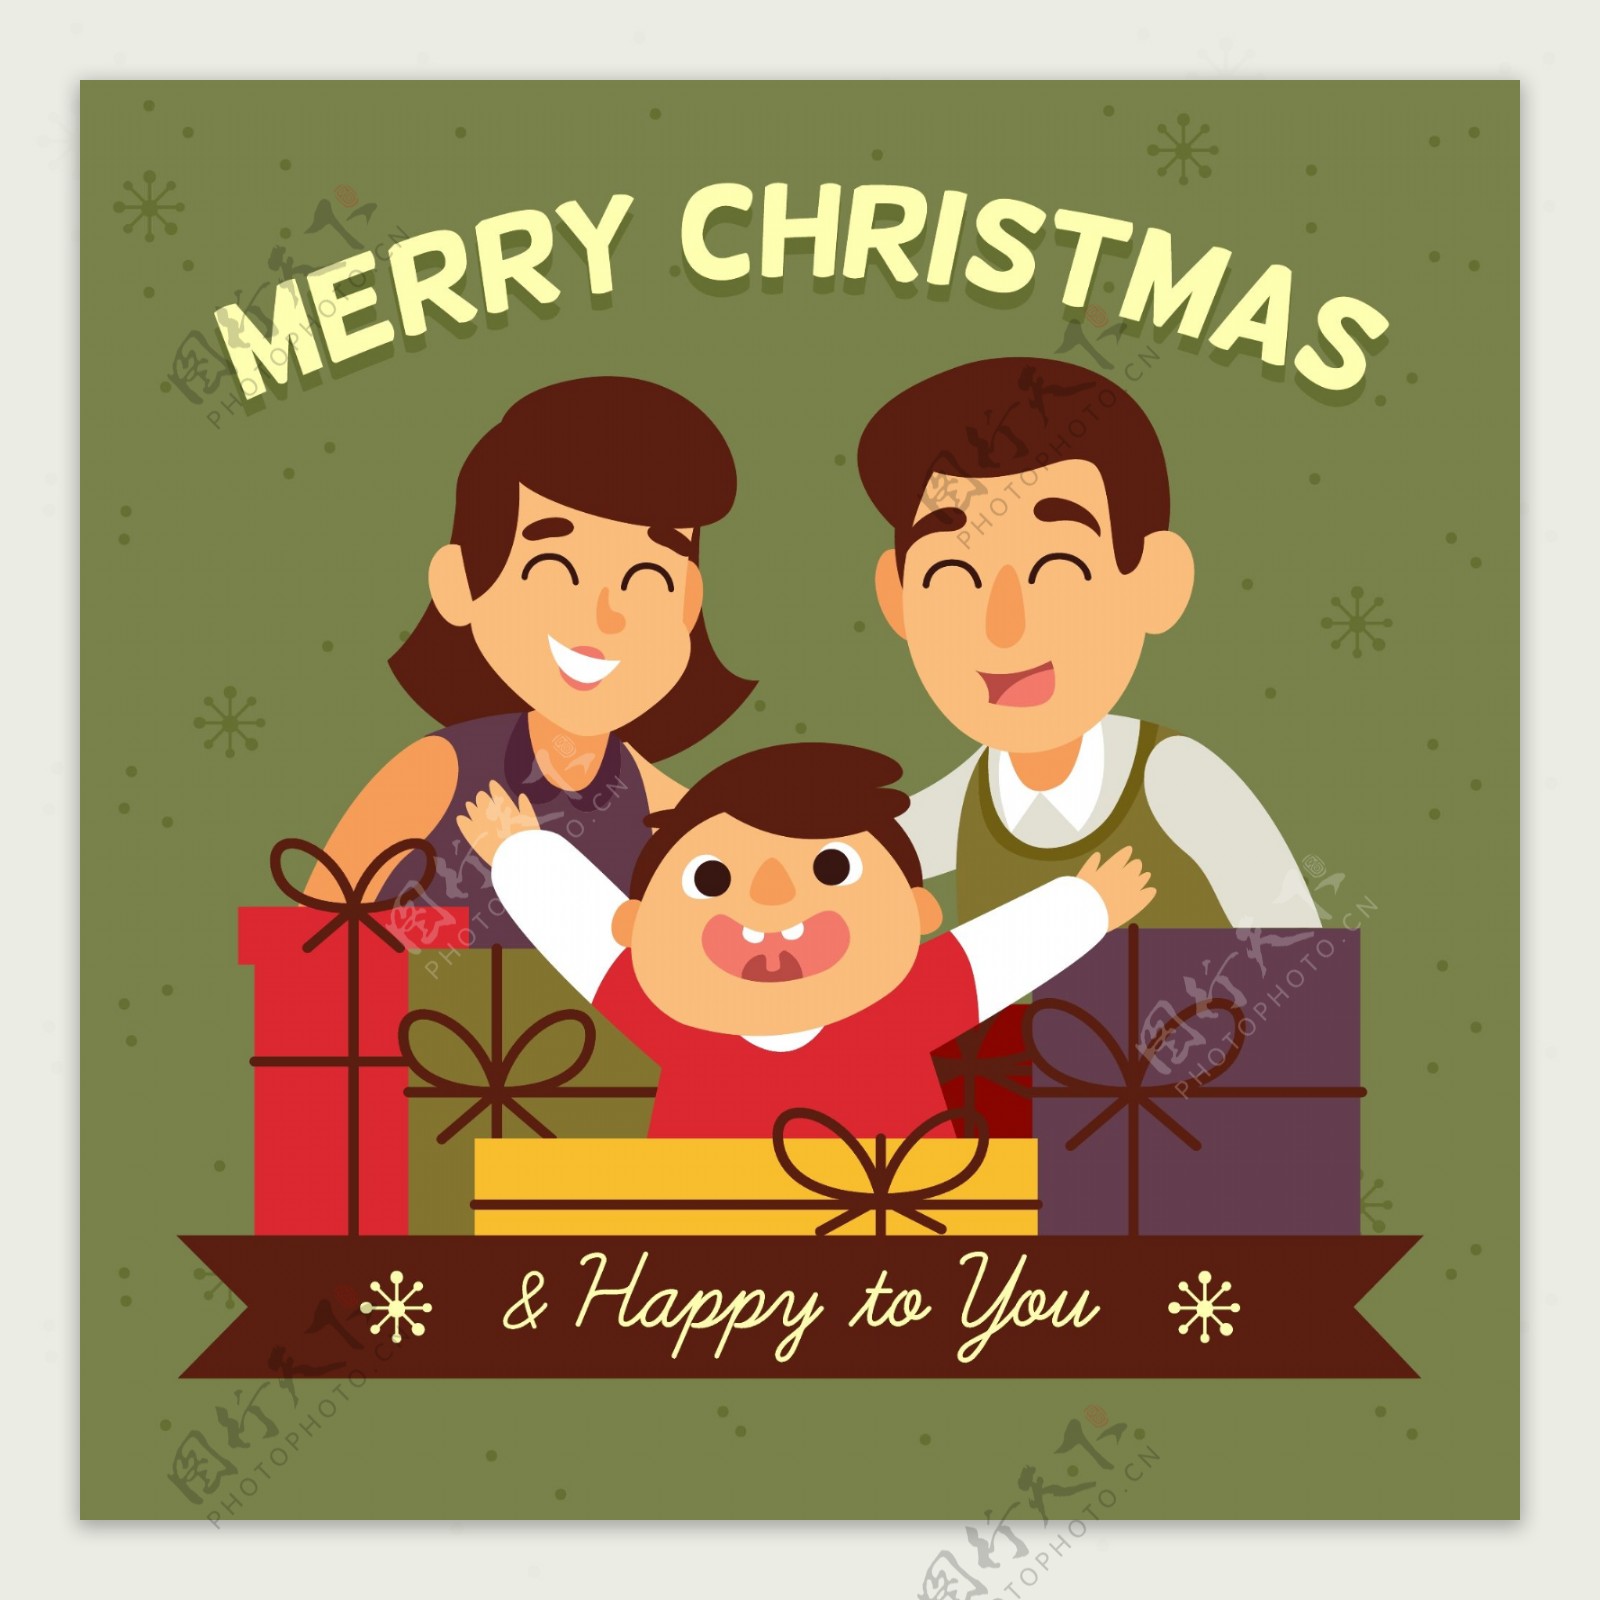 卡通圣诞节快乐的一家人儿童孩子